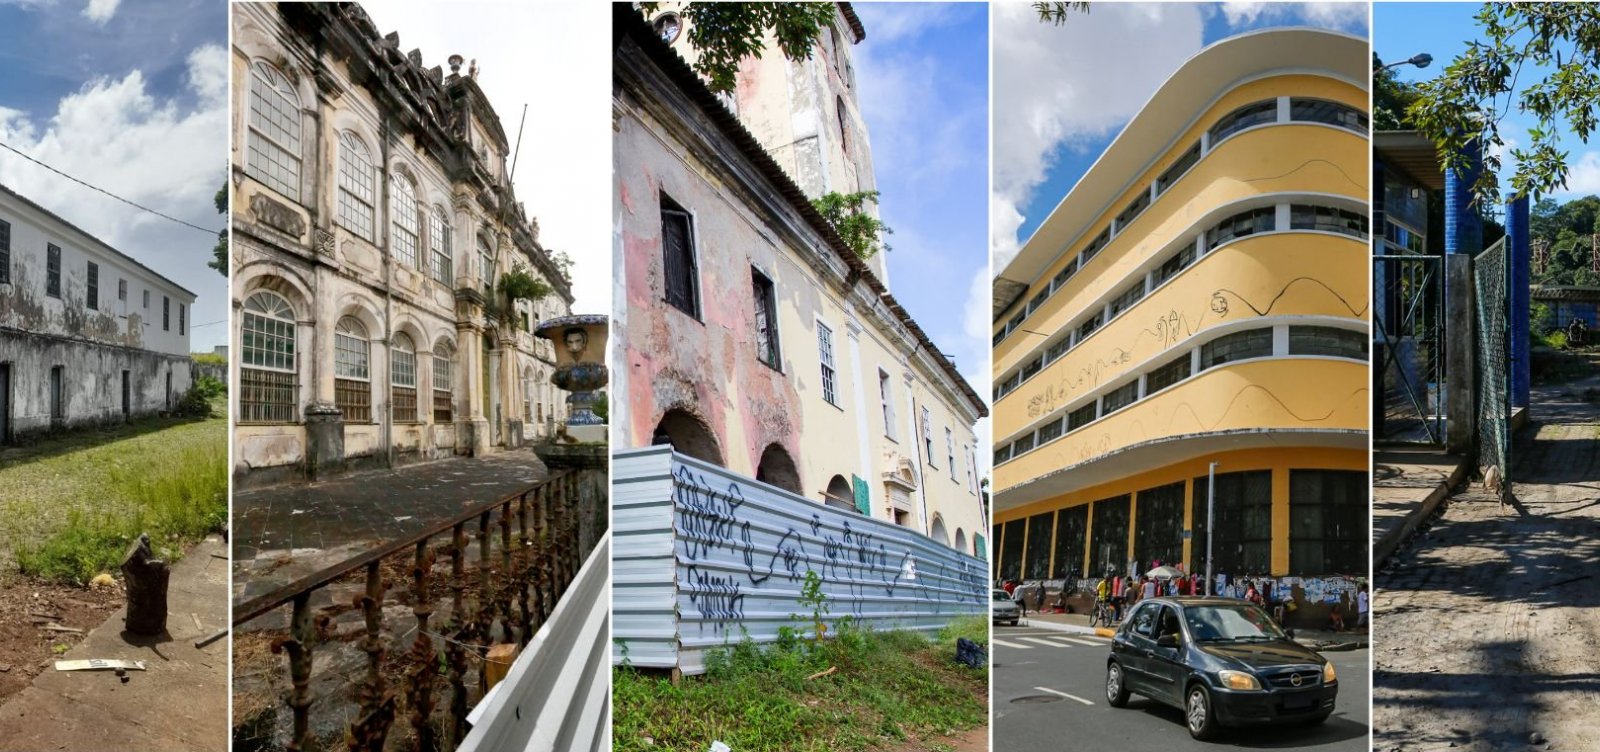 Cidade do abandono: Jornal Metropole lista espaços e imóveis históricos apagados pelo descaso